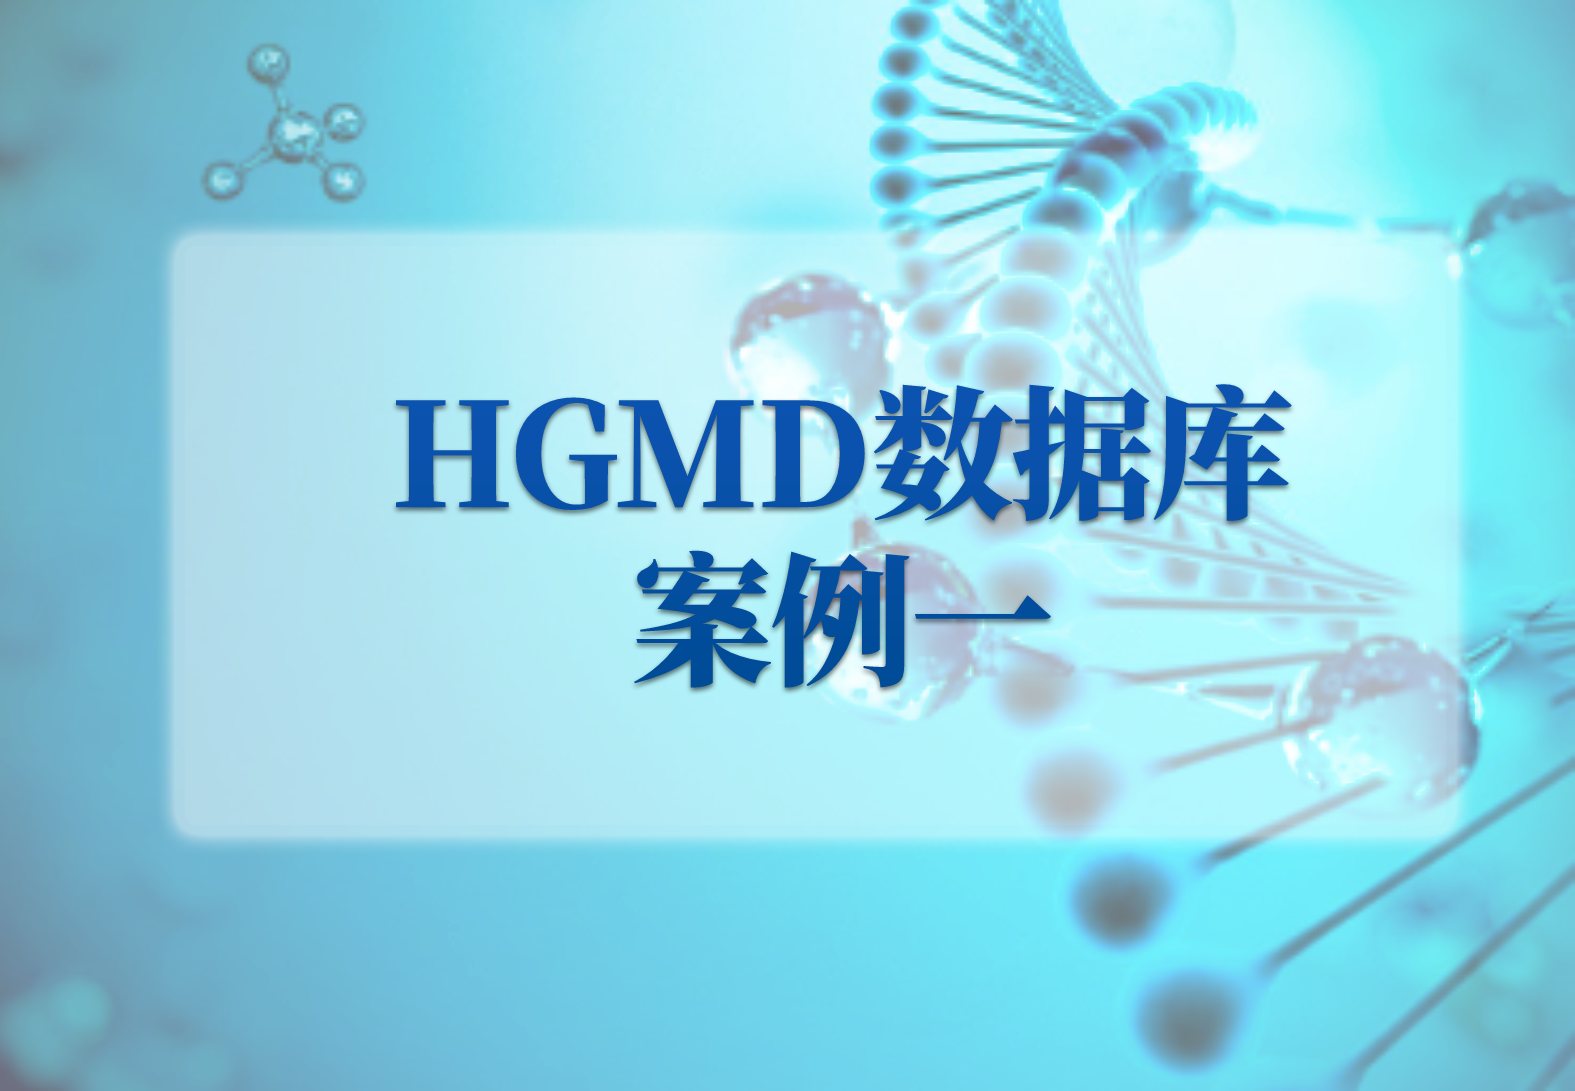 HGMD数据库案例一——重度还是轻度新冠？这其实已经写在你的基因里了